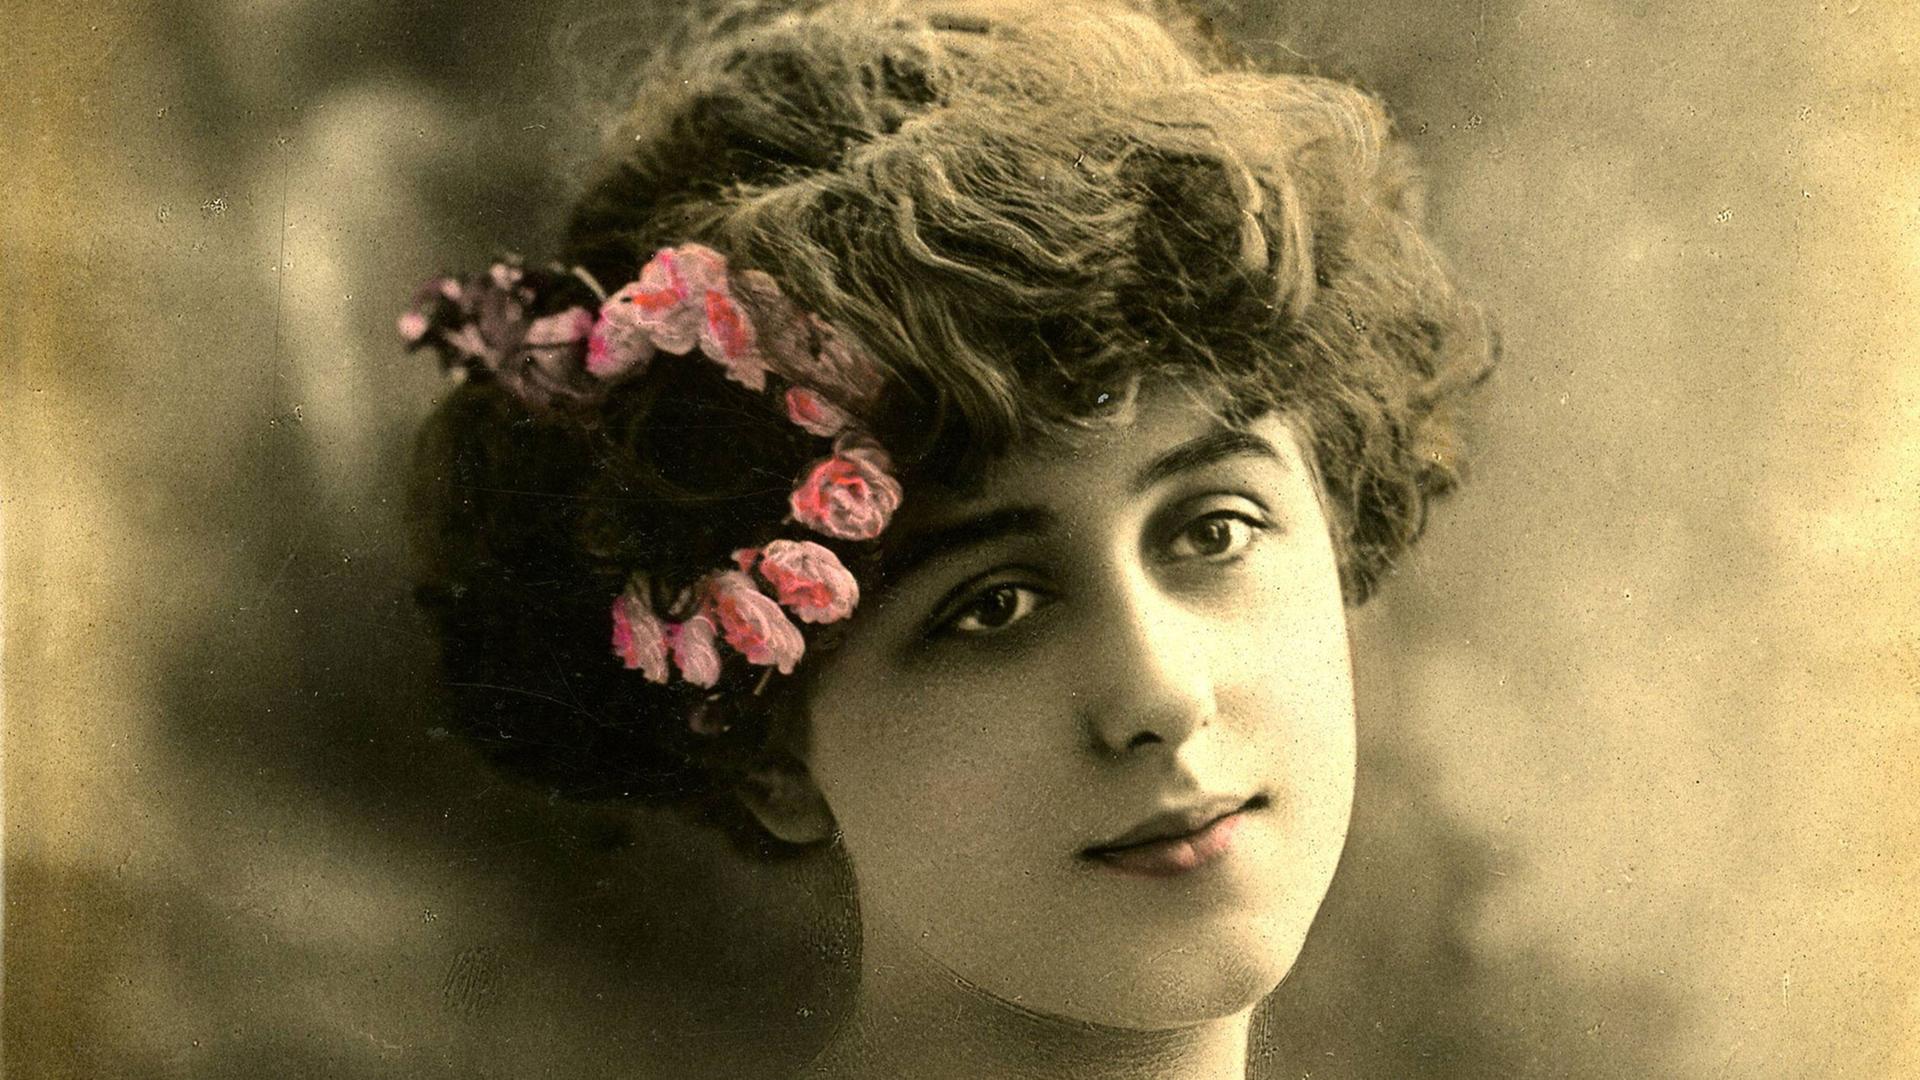 Nach dem plötzlichen Tod der Geliebten thematisiert Marcel Proust Kummer und Leid. Zu sehen: Porträt der französischen Schauspielerin Gabrielle Robinne (18861980) um 1905